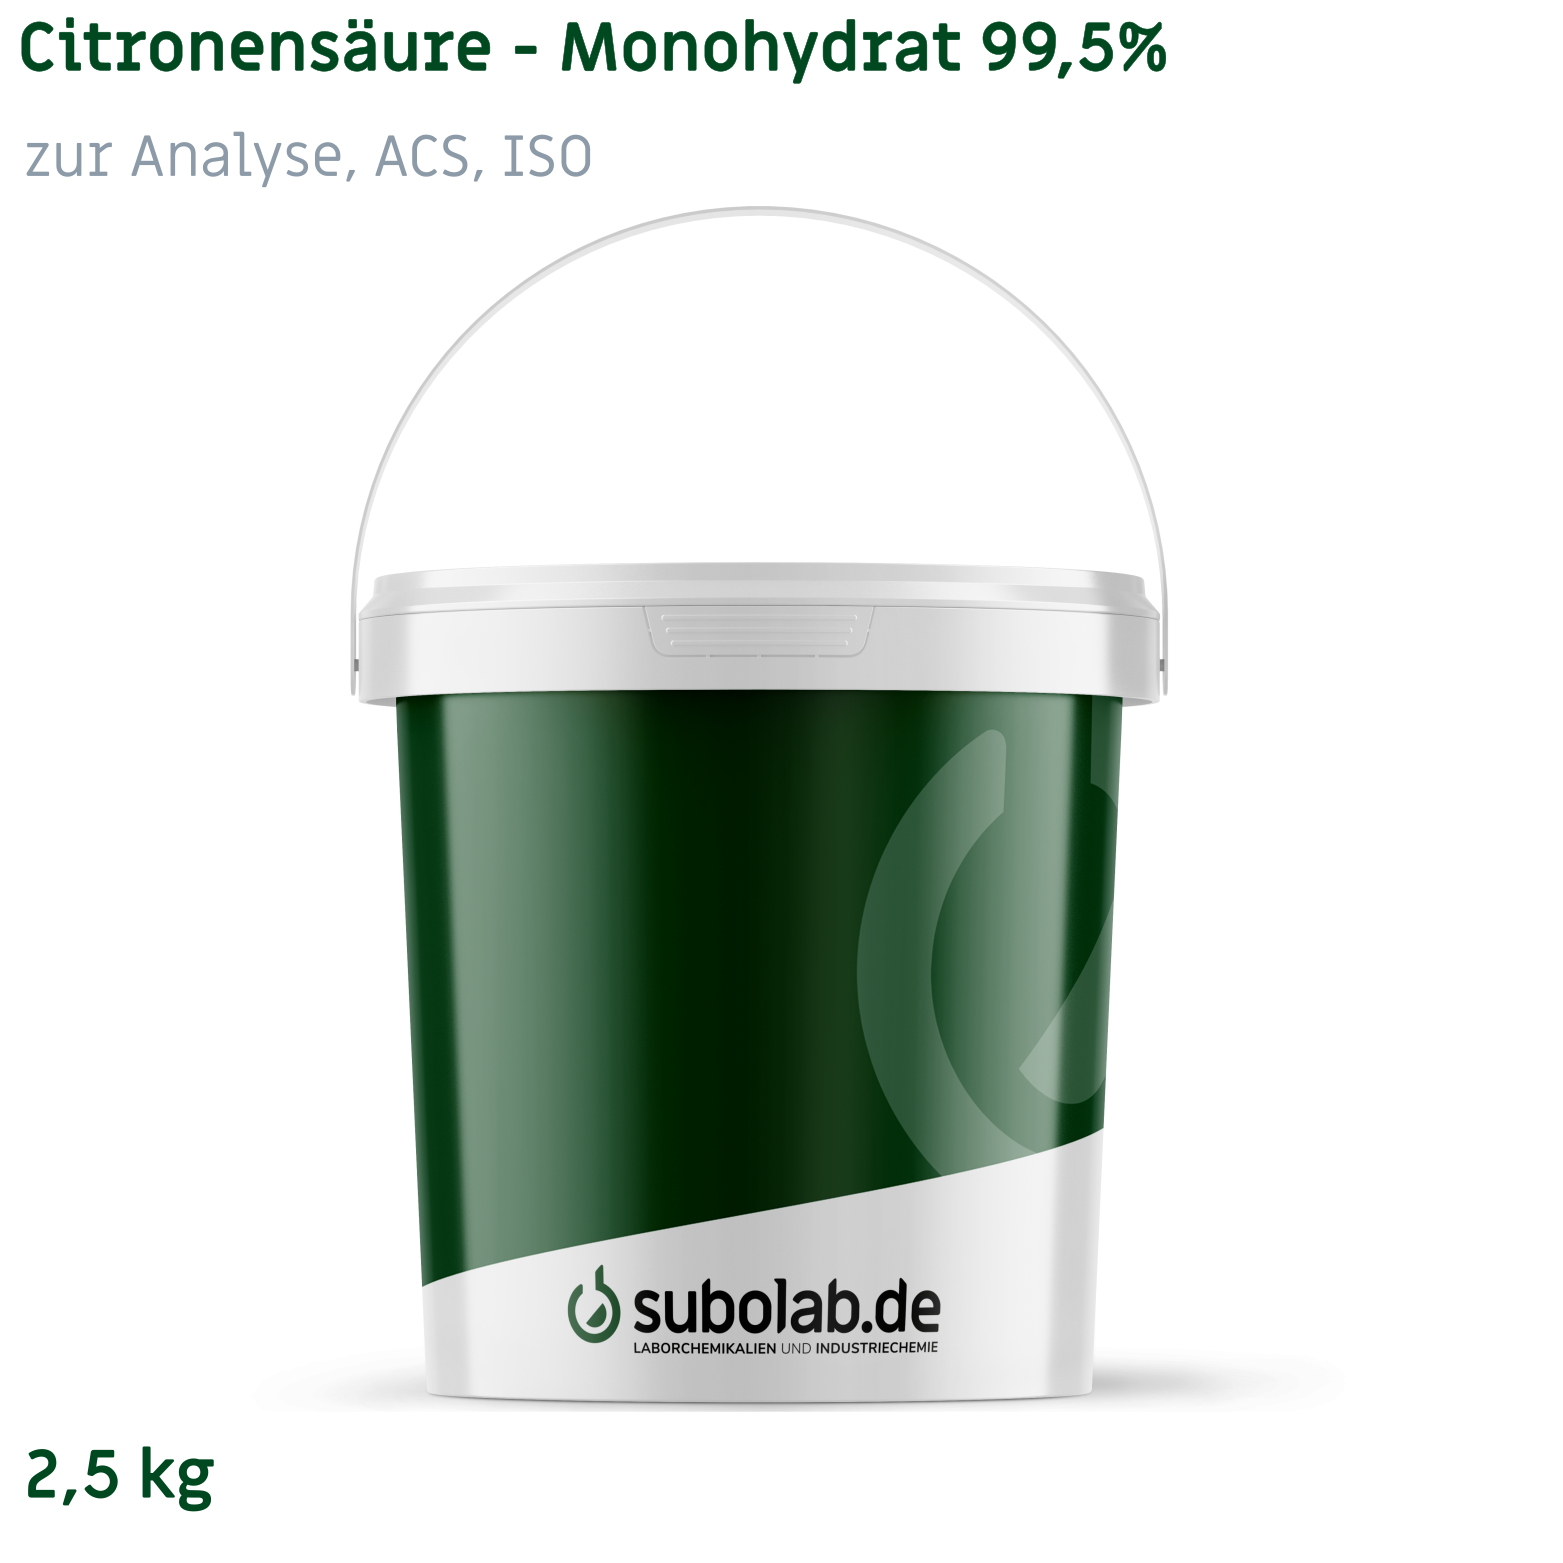 Bild von Citronensäure - Monohydrat 99,5% zur Analyse, ACS, ISO (2,5 kg)